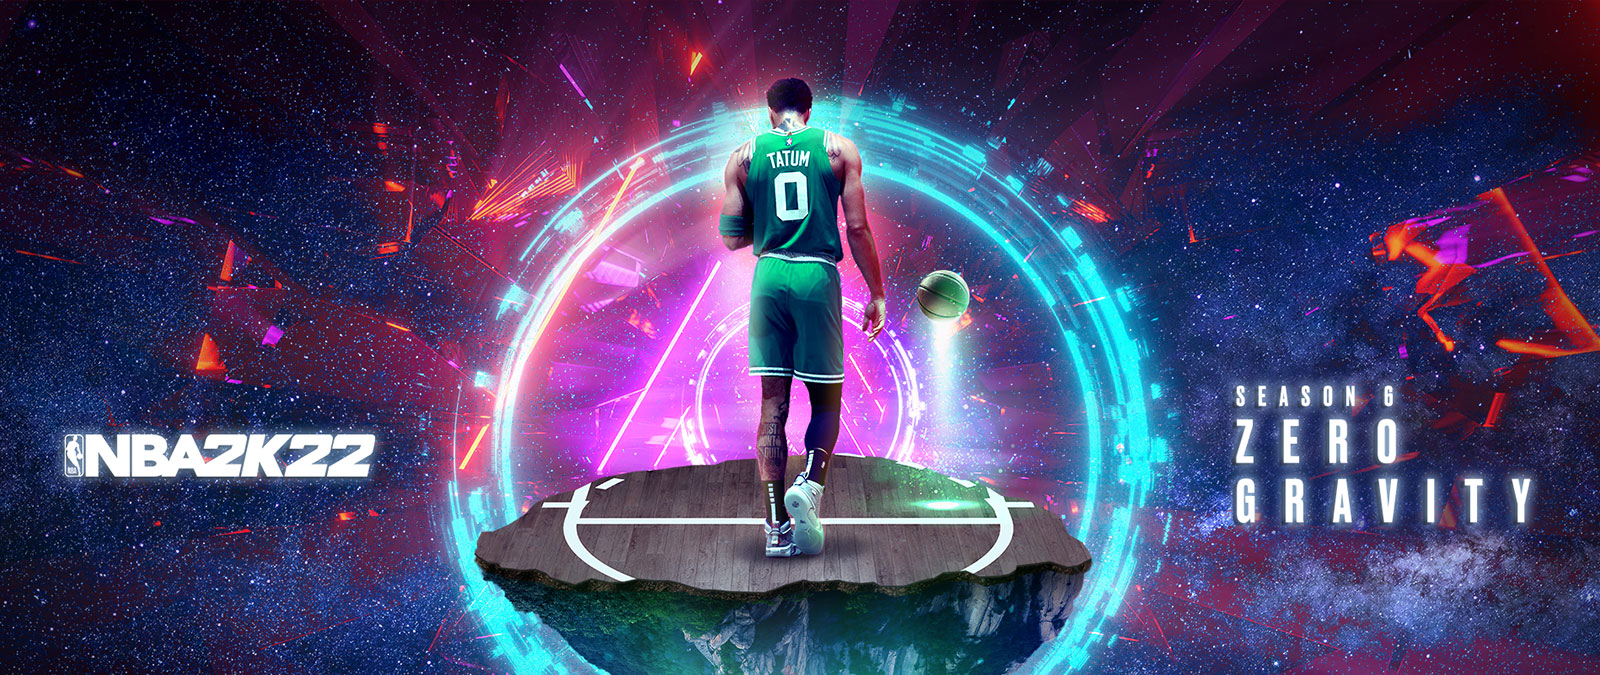 NBA 2K22, Sezon 6. Zerowa grawitacja, Tatum stoi na unoszącym się w przestrzeni kawałku boiska do koszykówki, a wokół niego krążą pierścienie energii.